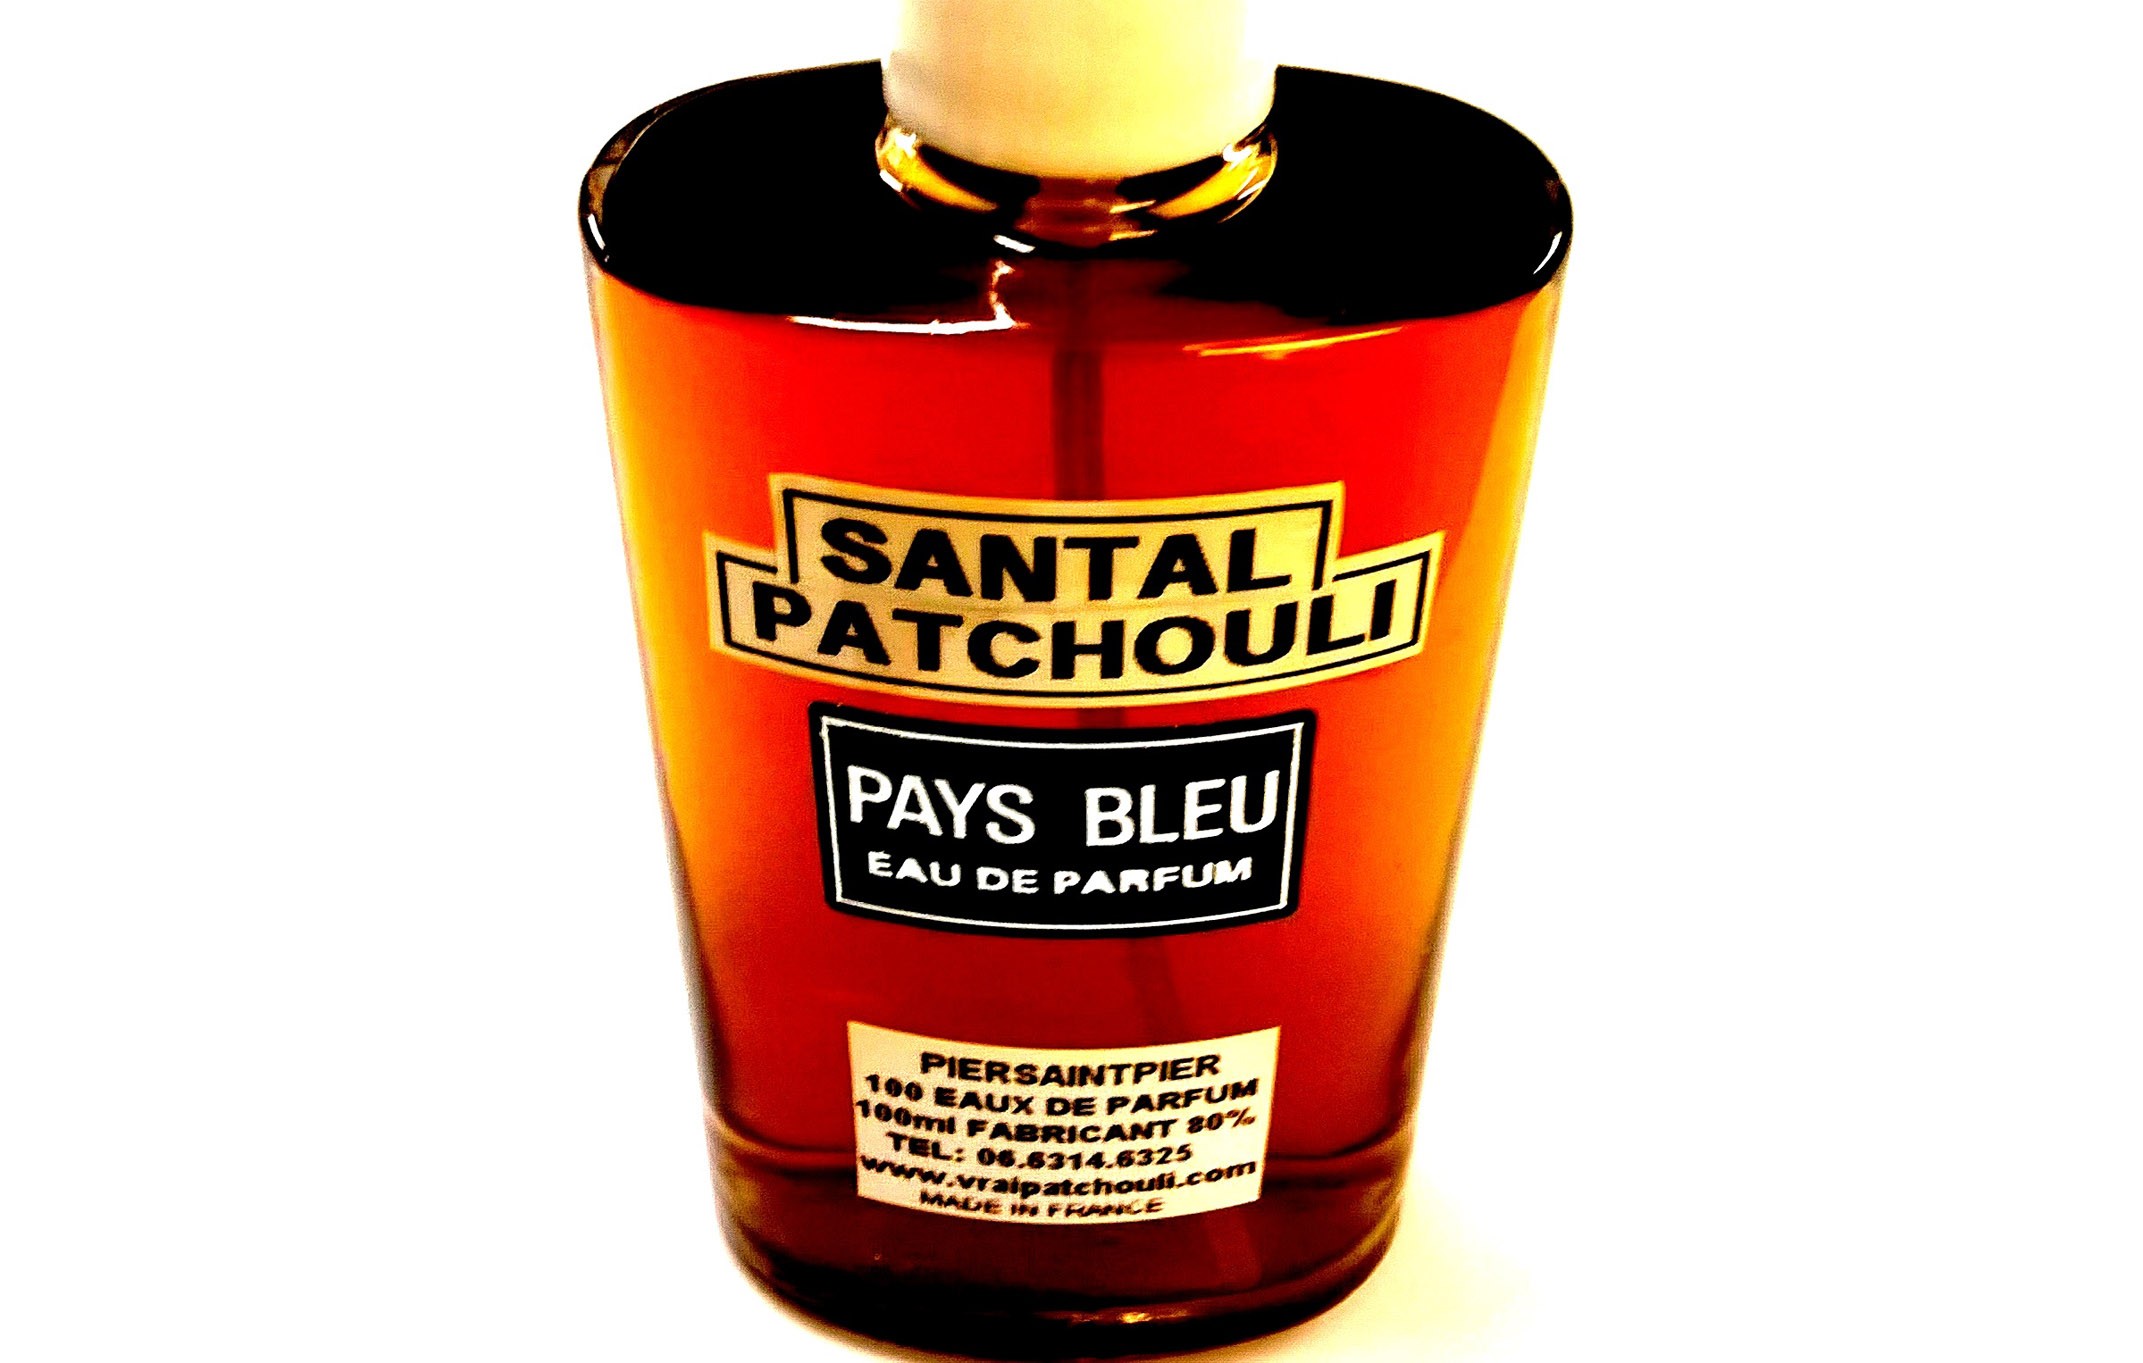 SANTAL PATCHOULI (Flacon Simple / Sans Boite)